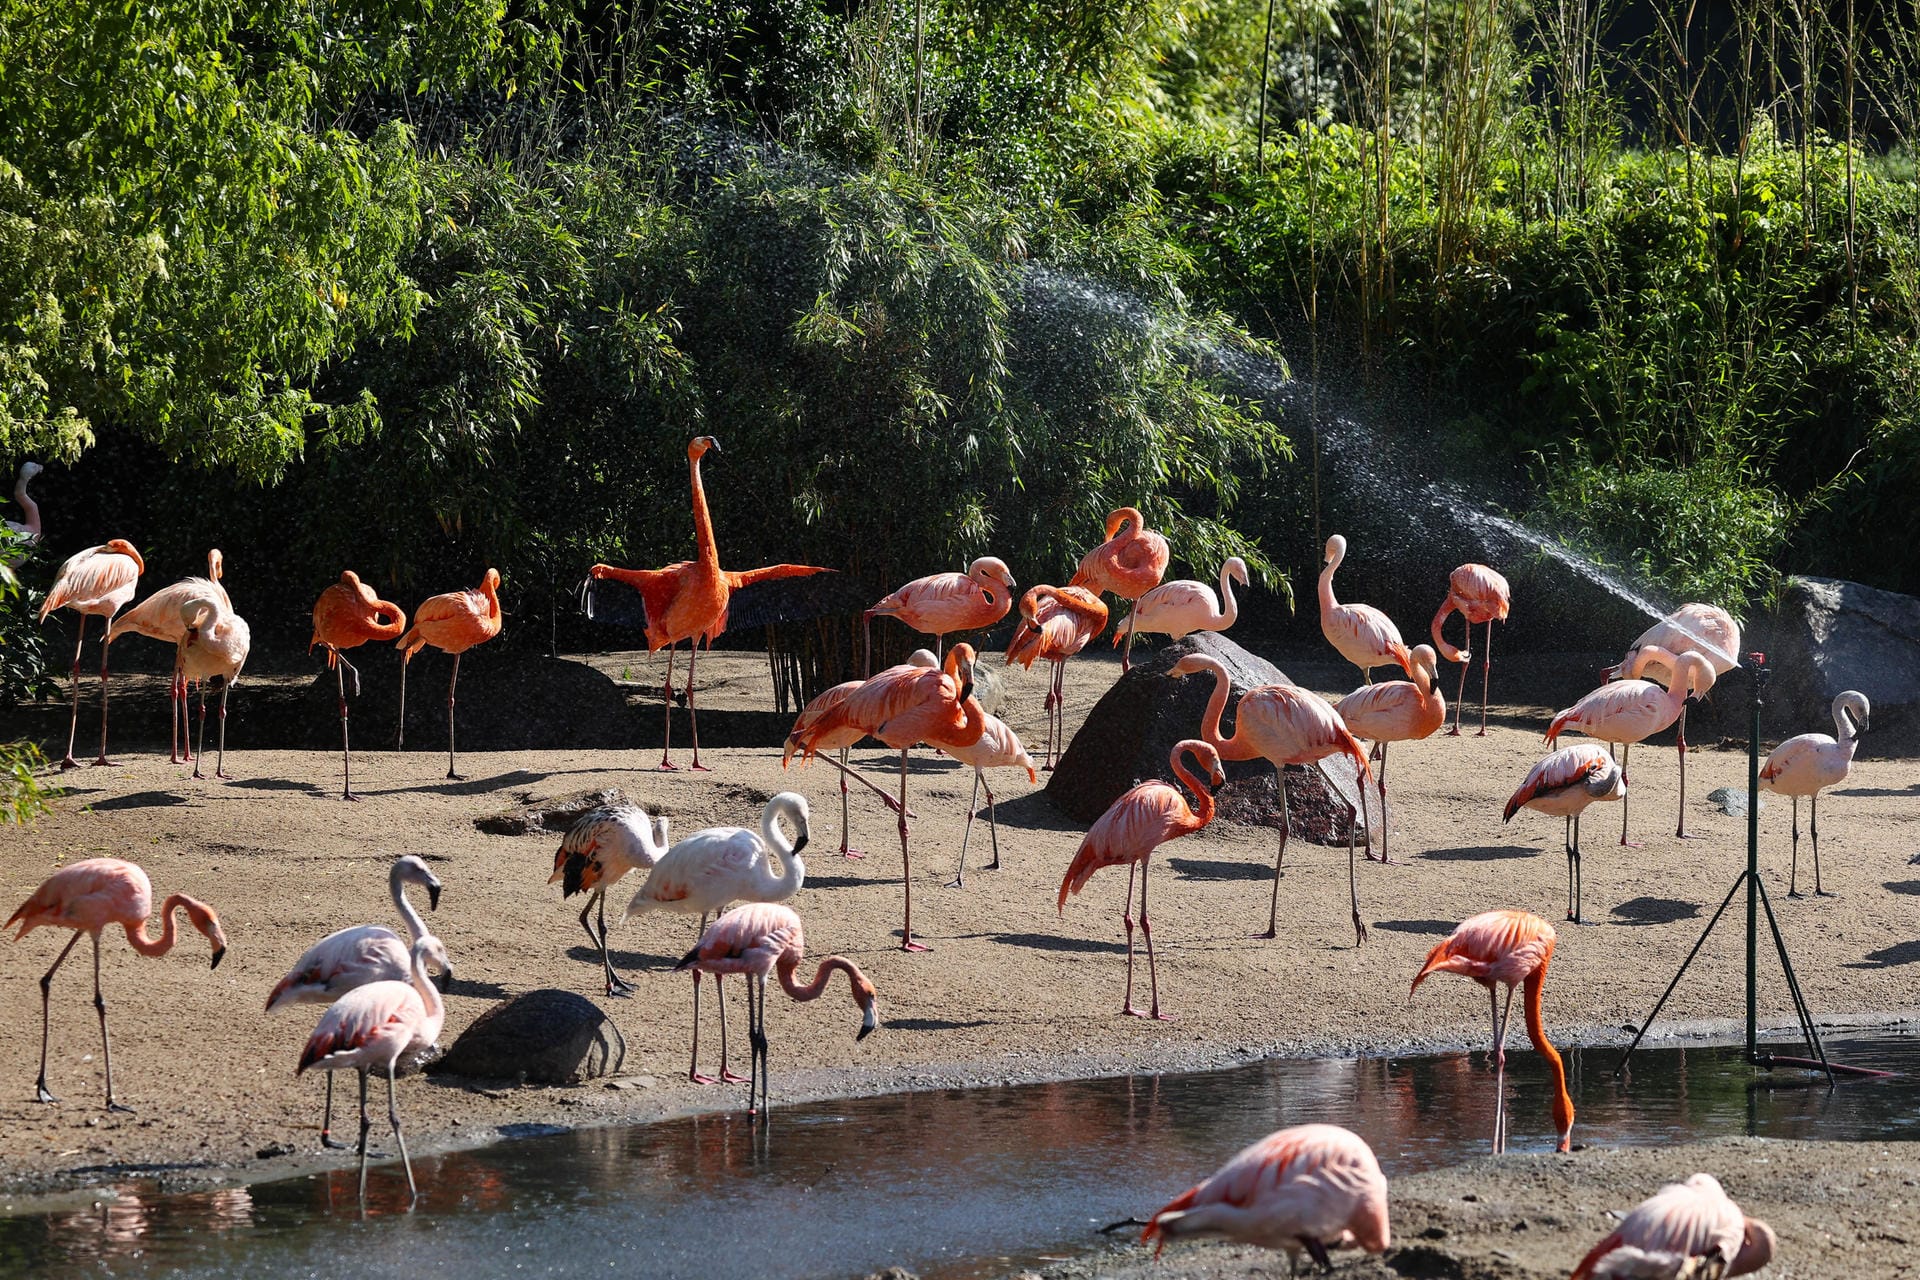 Blick auf die Flamingos im Gehege: Sie nahmen die Abkühlung durch einen Rasensprenger gelassen entgegen.